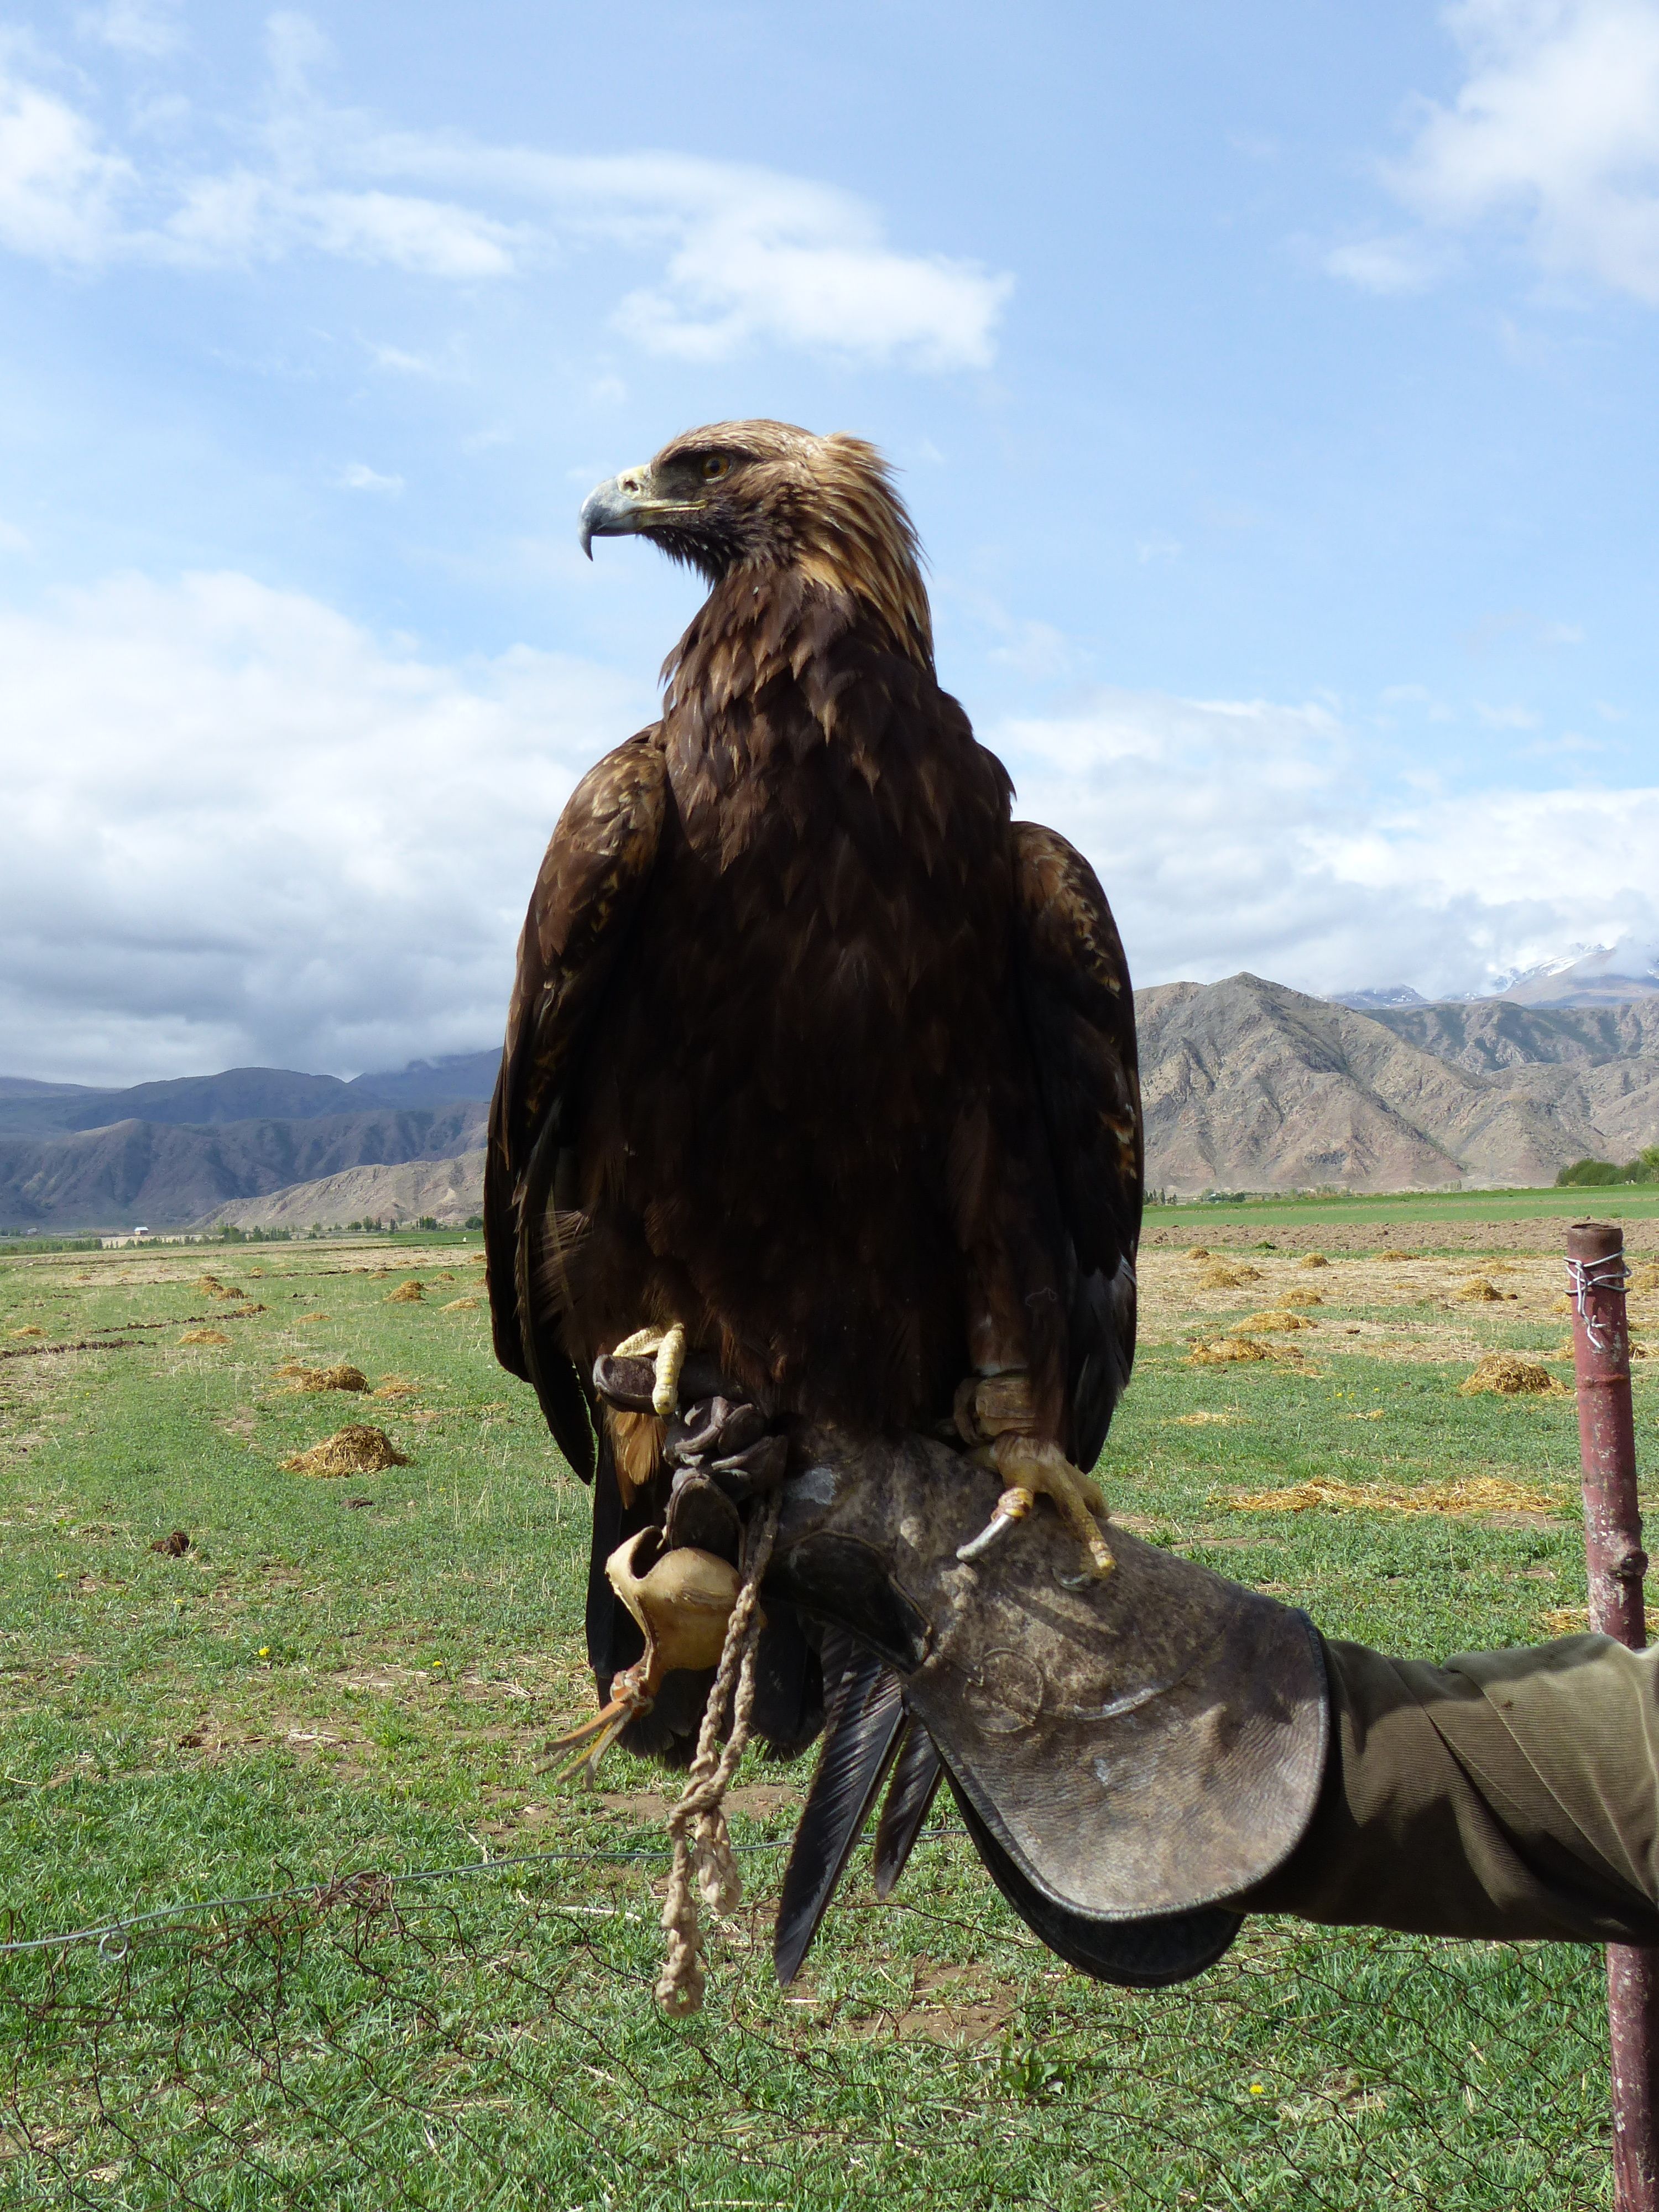 Tumara the eagle